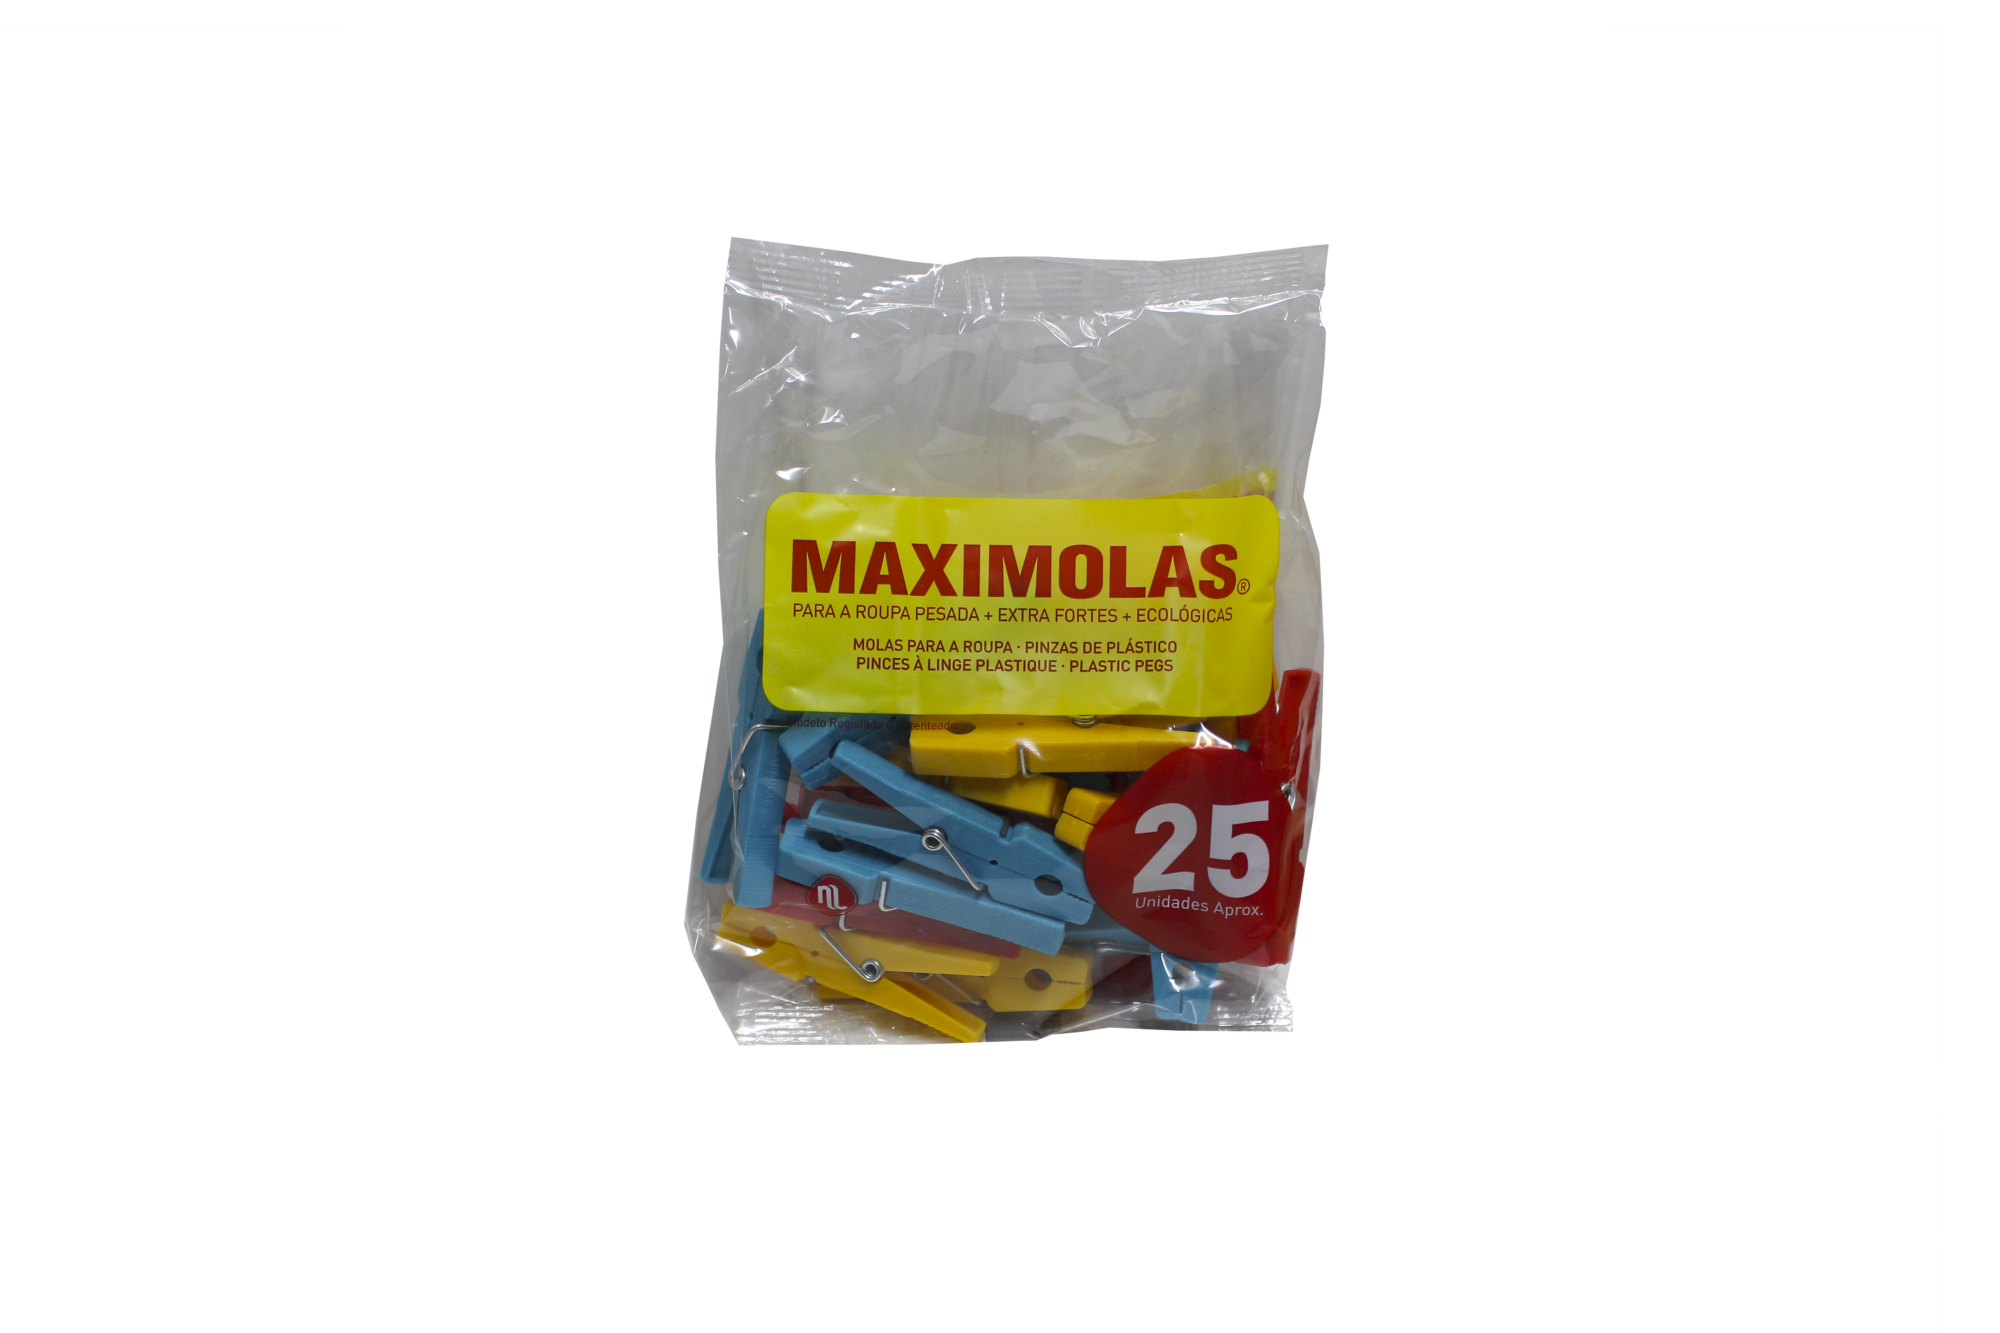 Molas Plástico Para Roupa 75 MM 50 UN MAXIMOLAS - SF0212180_01690